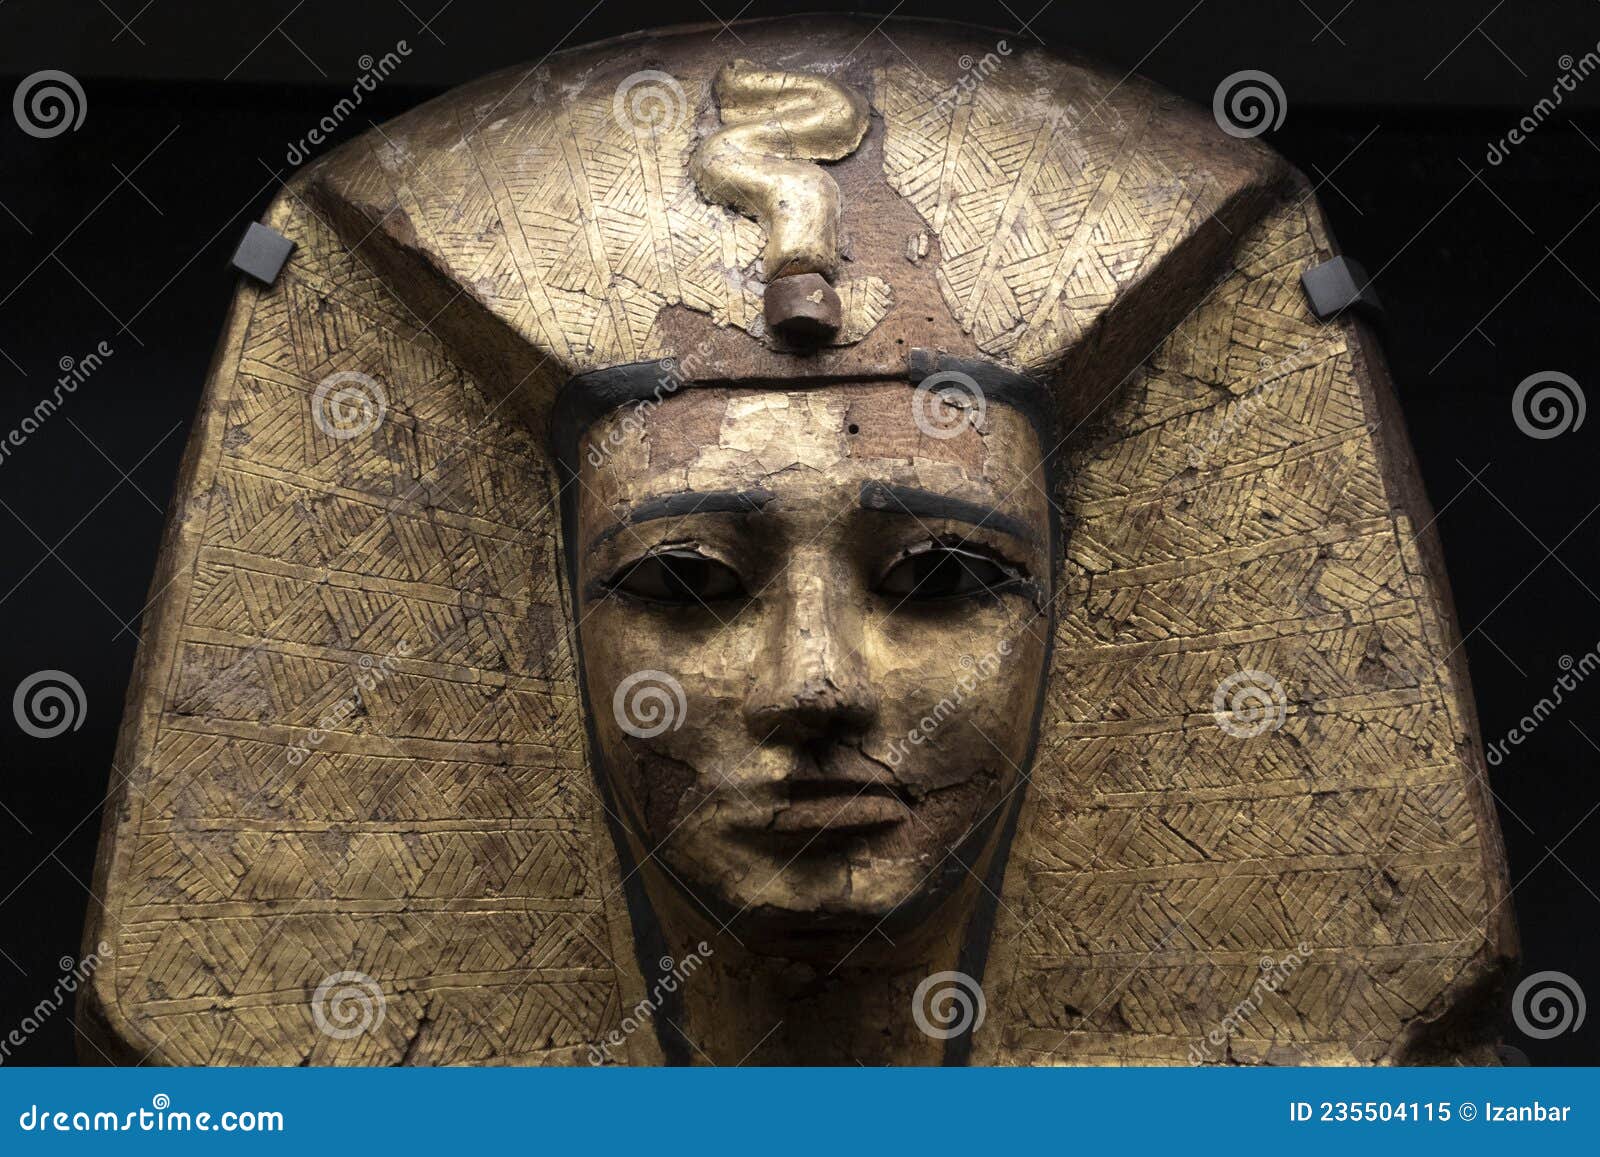 古埃及谦卑者的死亡：新王国埃及人的葬礼习俗【图文解析】+彩绘人形棺欣赏 - 知乎